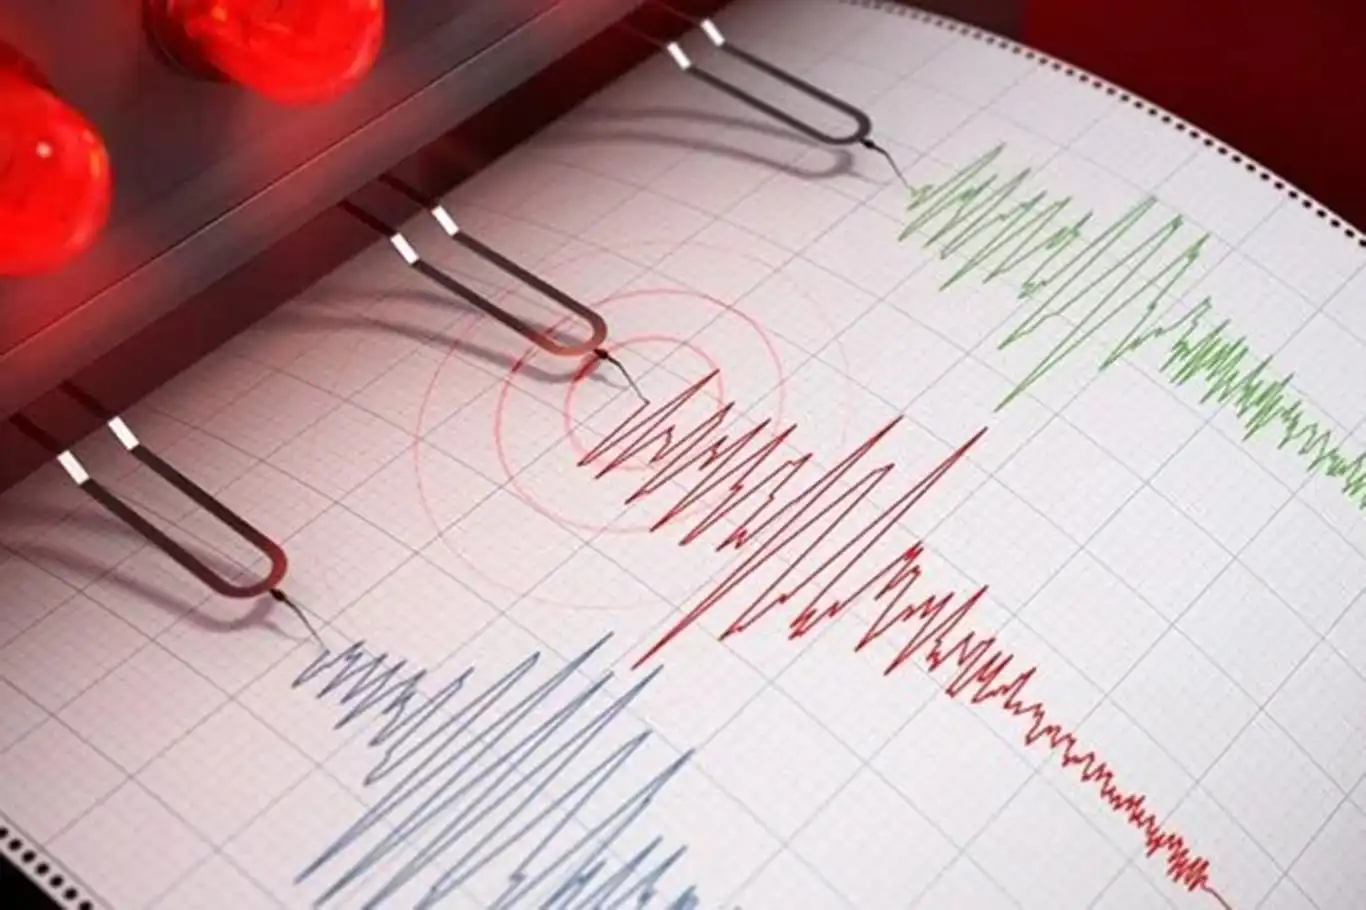 Bingöl'de 3,9 büyüklüğünde deprem